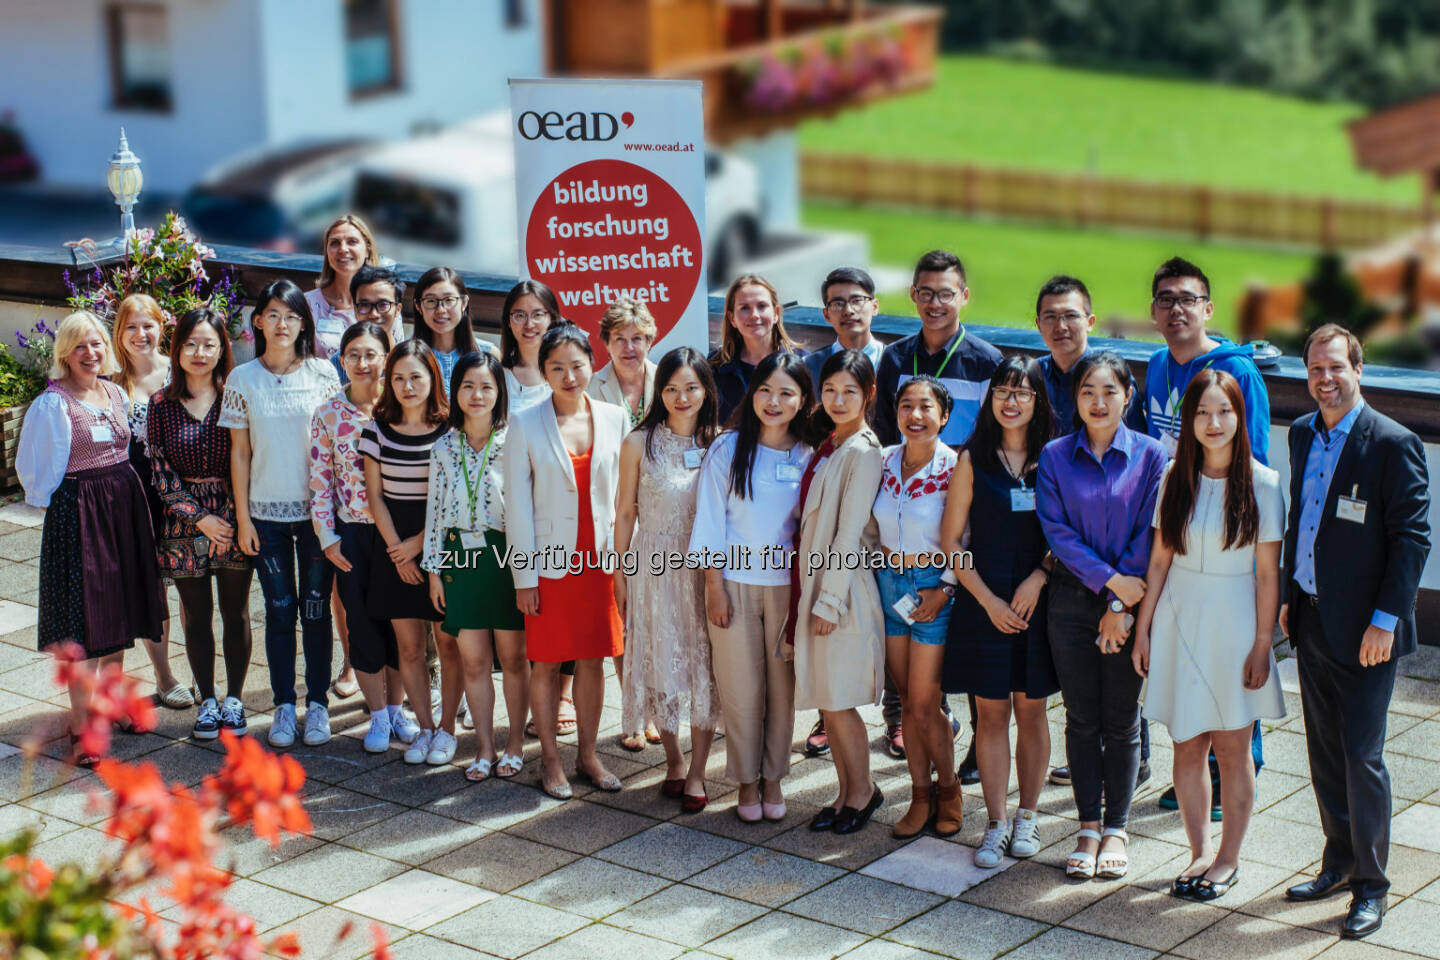 Die chinesischen Studierenden im Kreise ihrer Gastgeber/innen - OeAD (Österreichische Austauschdienst)-GmbH: 21 chinesische Studierende bei den Hochschulgesprächen in Alpbach (Fotograf: Maria Noisternig / Fotocredit: Europäisches Forum Alpbach)